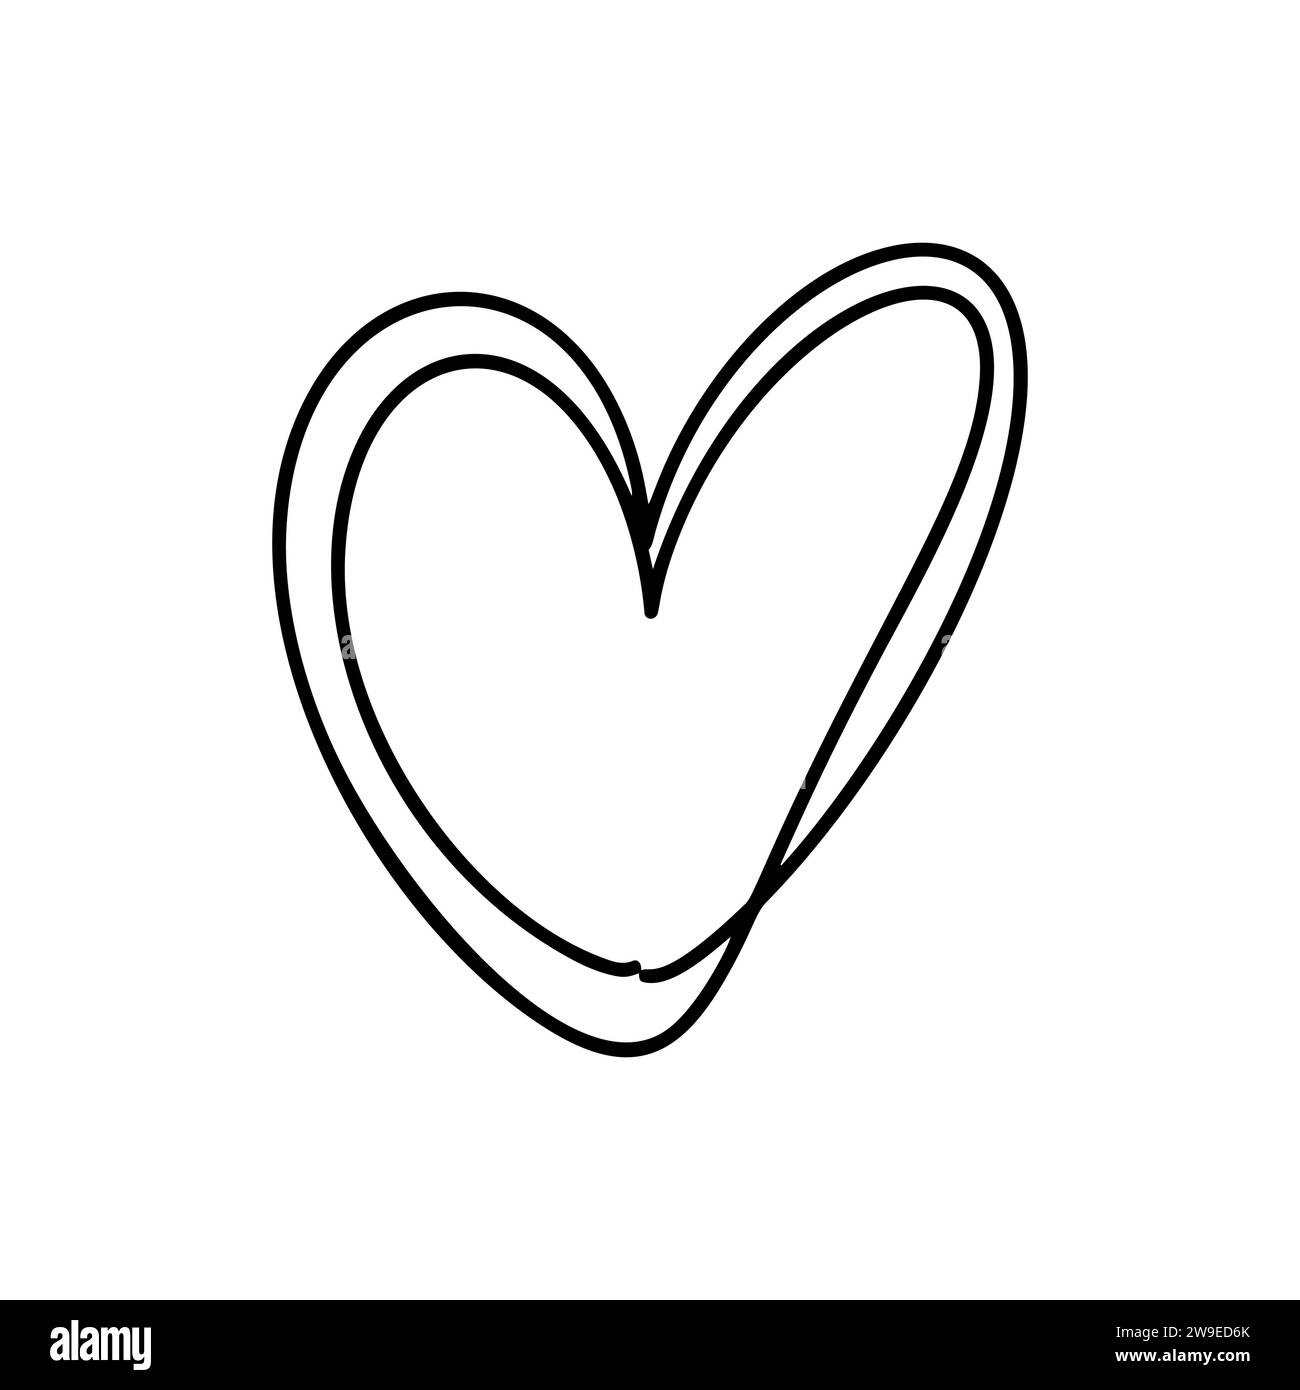 Liebe Herz Vektor Linie Illustration. Schwarze Kontur. Element für Valentinstag Banner, Poster, Grußkarte Stock Vektor